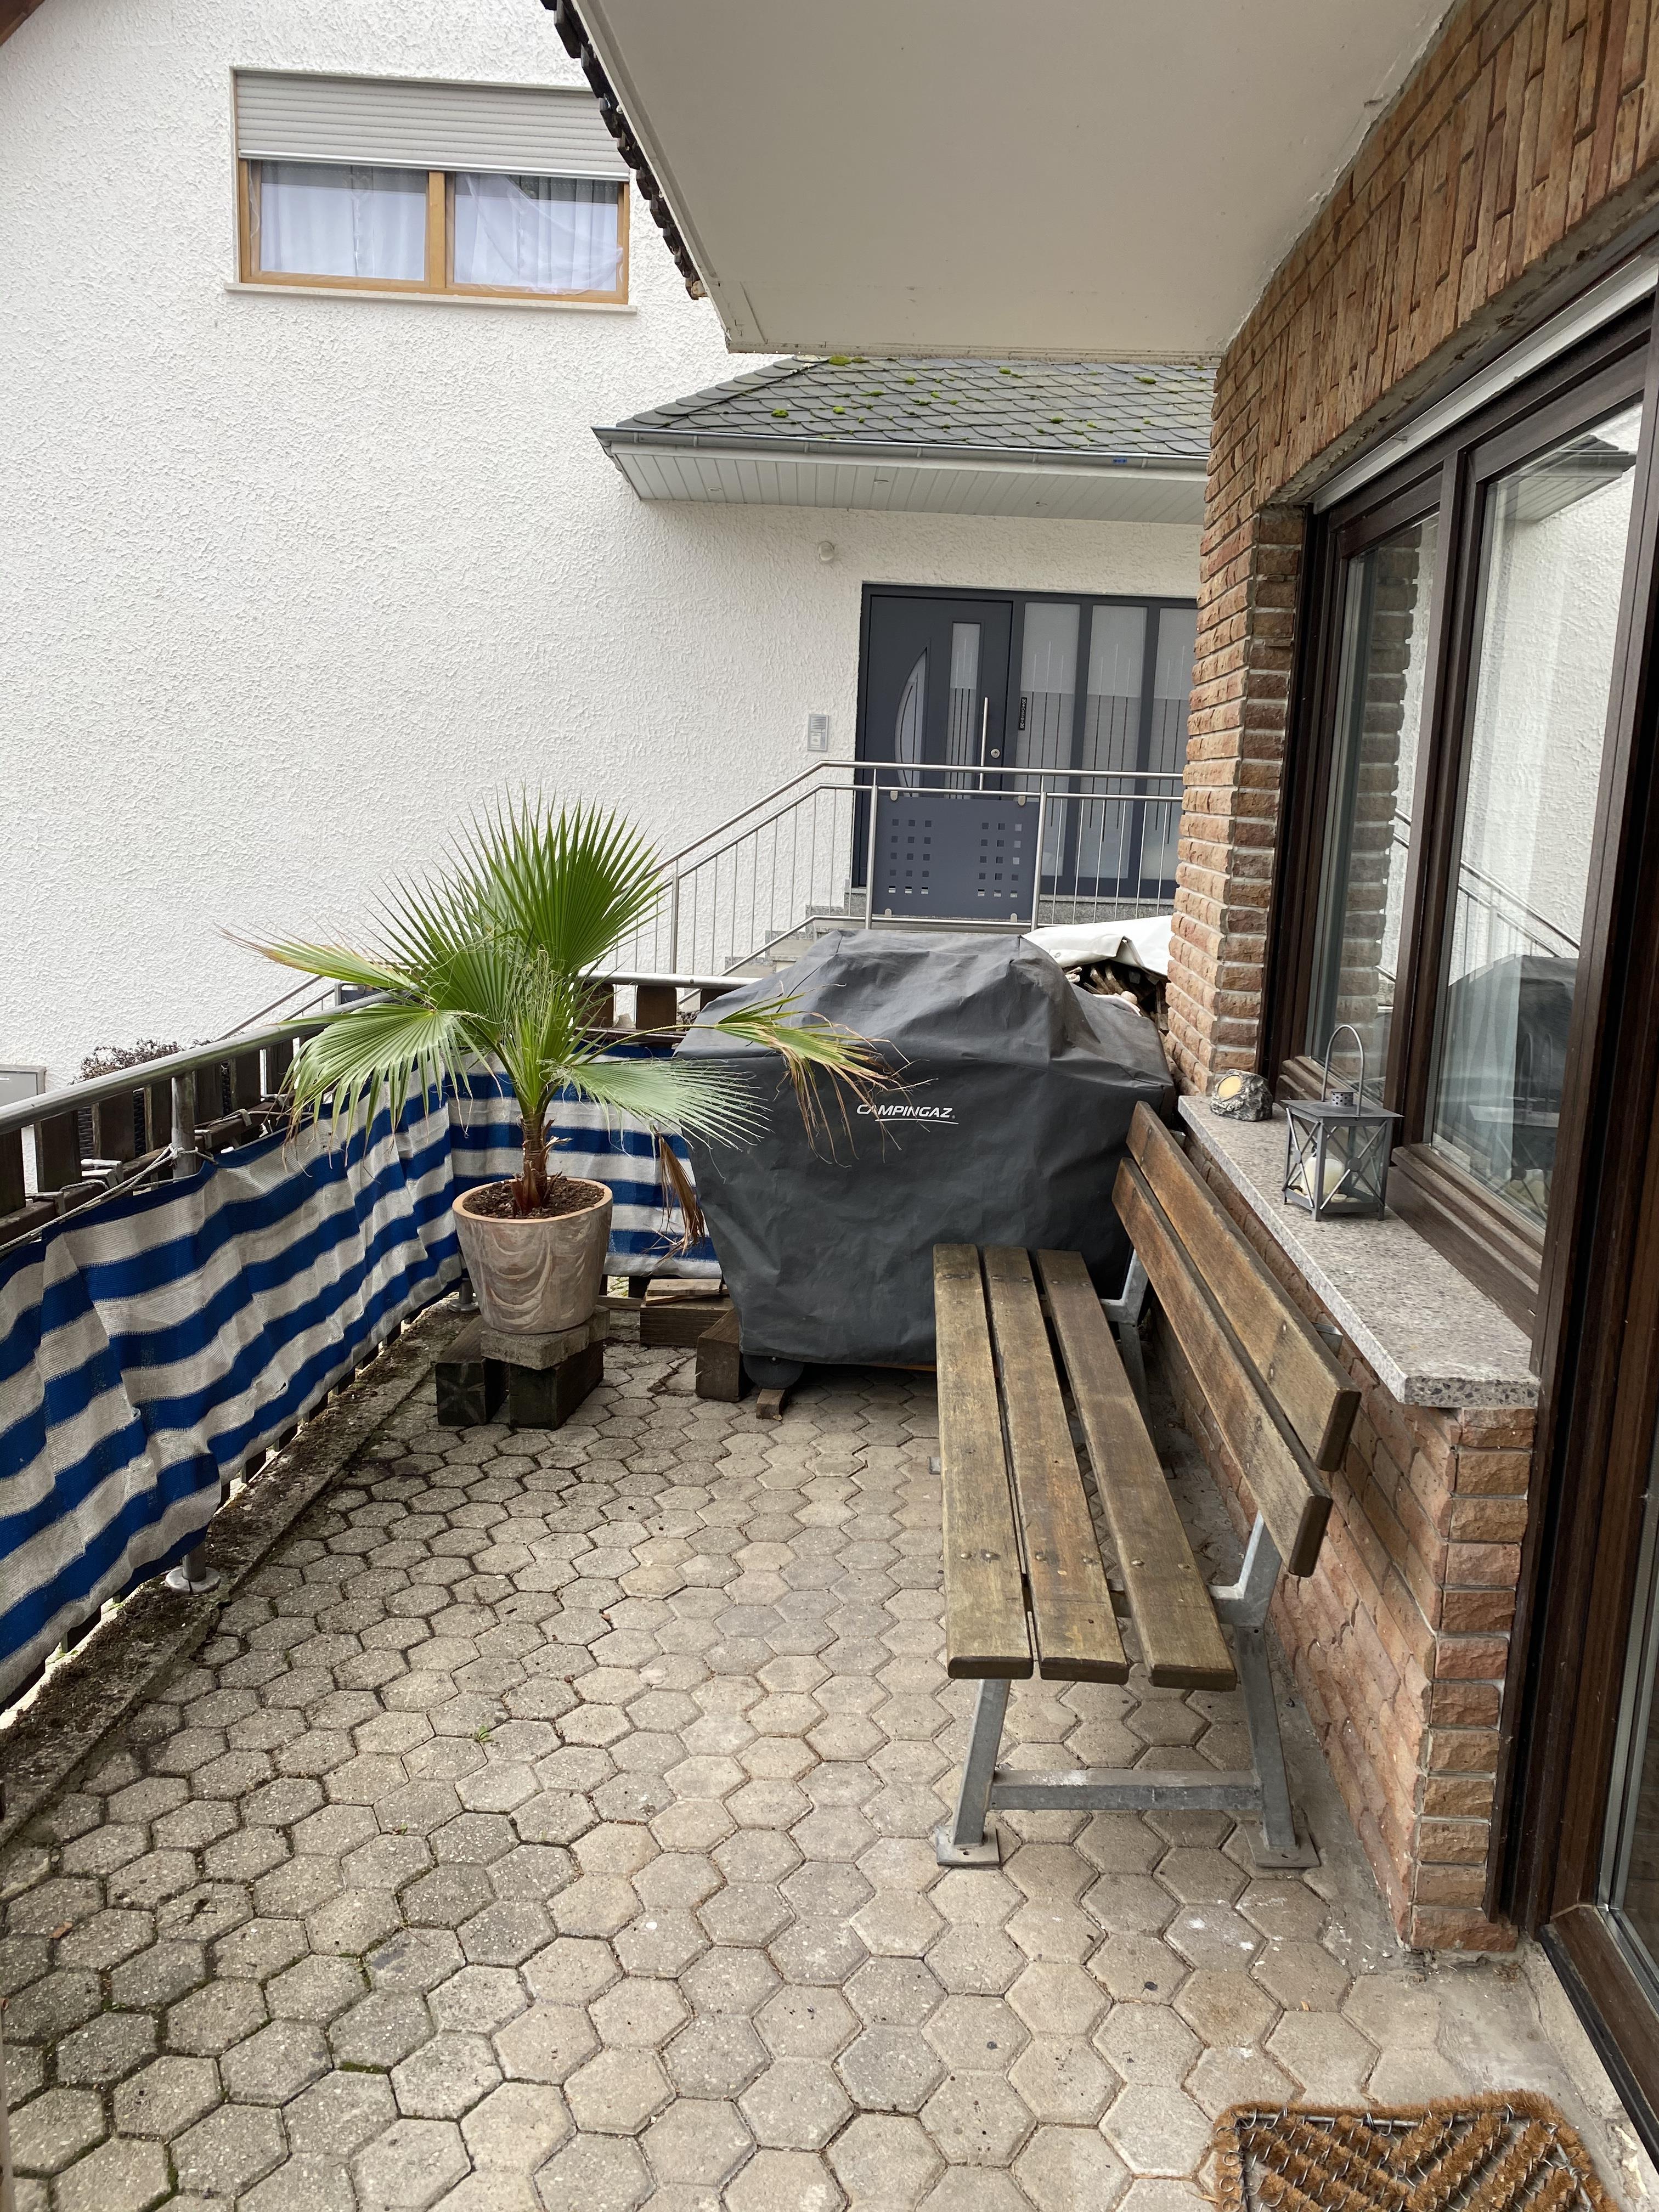 Terrasse mit Grill und Gartenmöbel